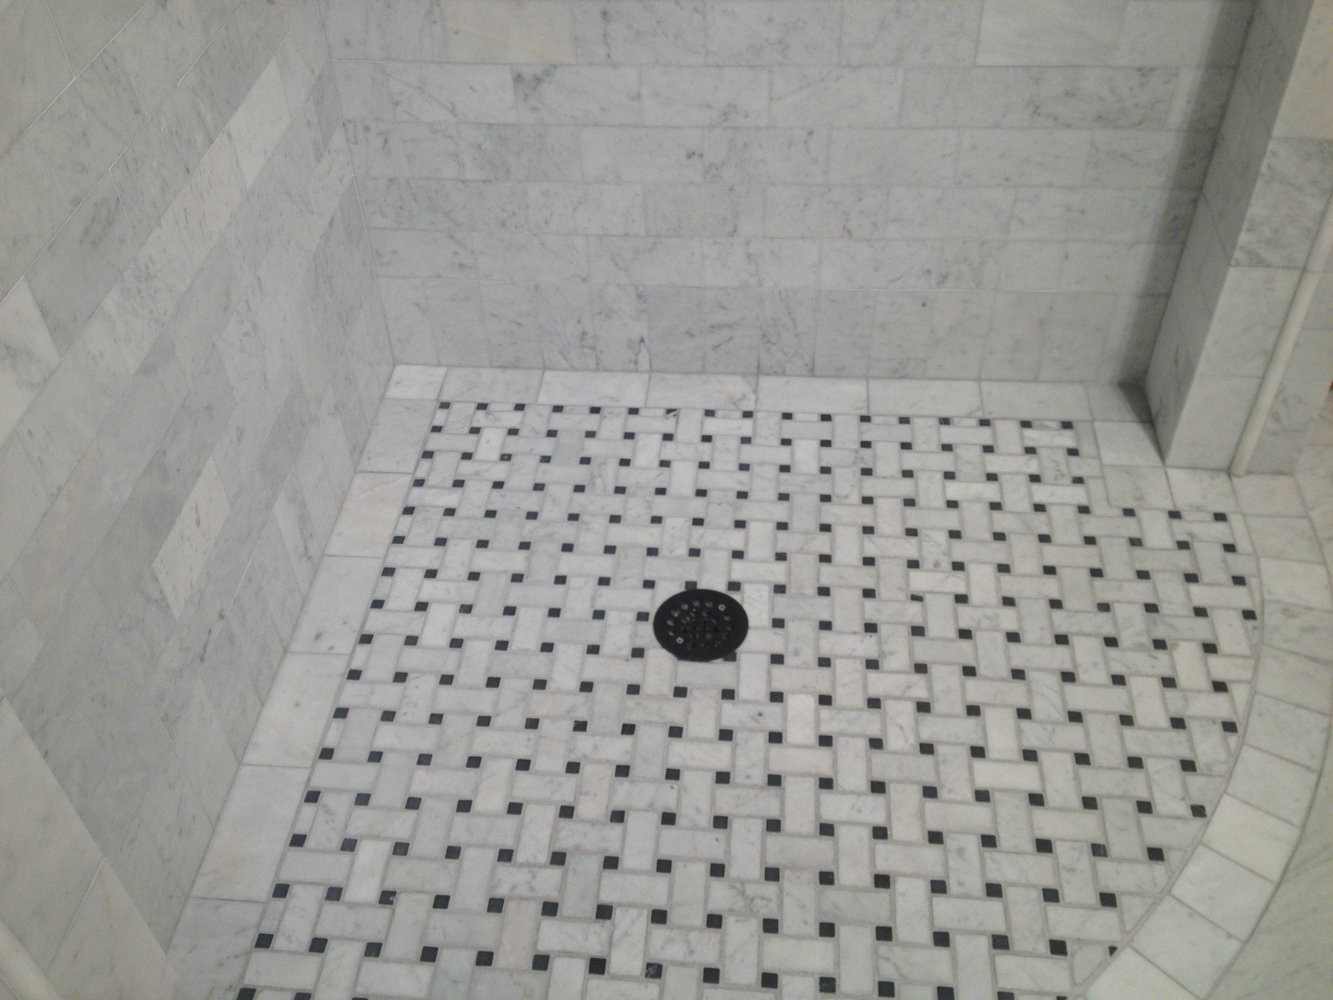 Basket Weave Bathroom Floor Tile
 23 nice ideas and pictures of basketweave bathroom tile